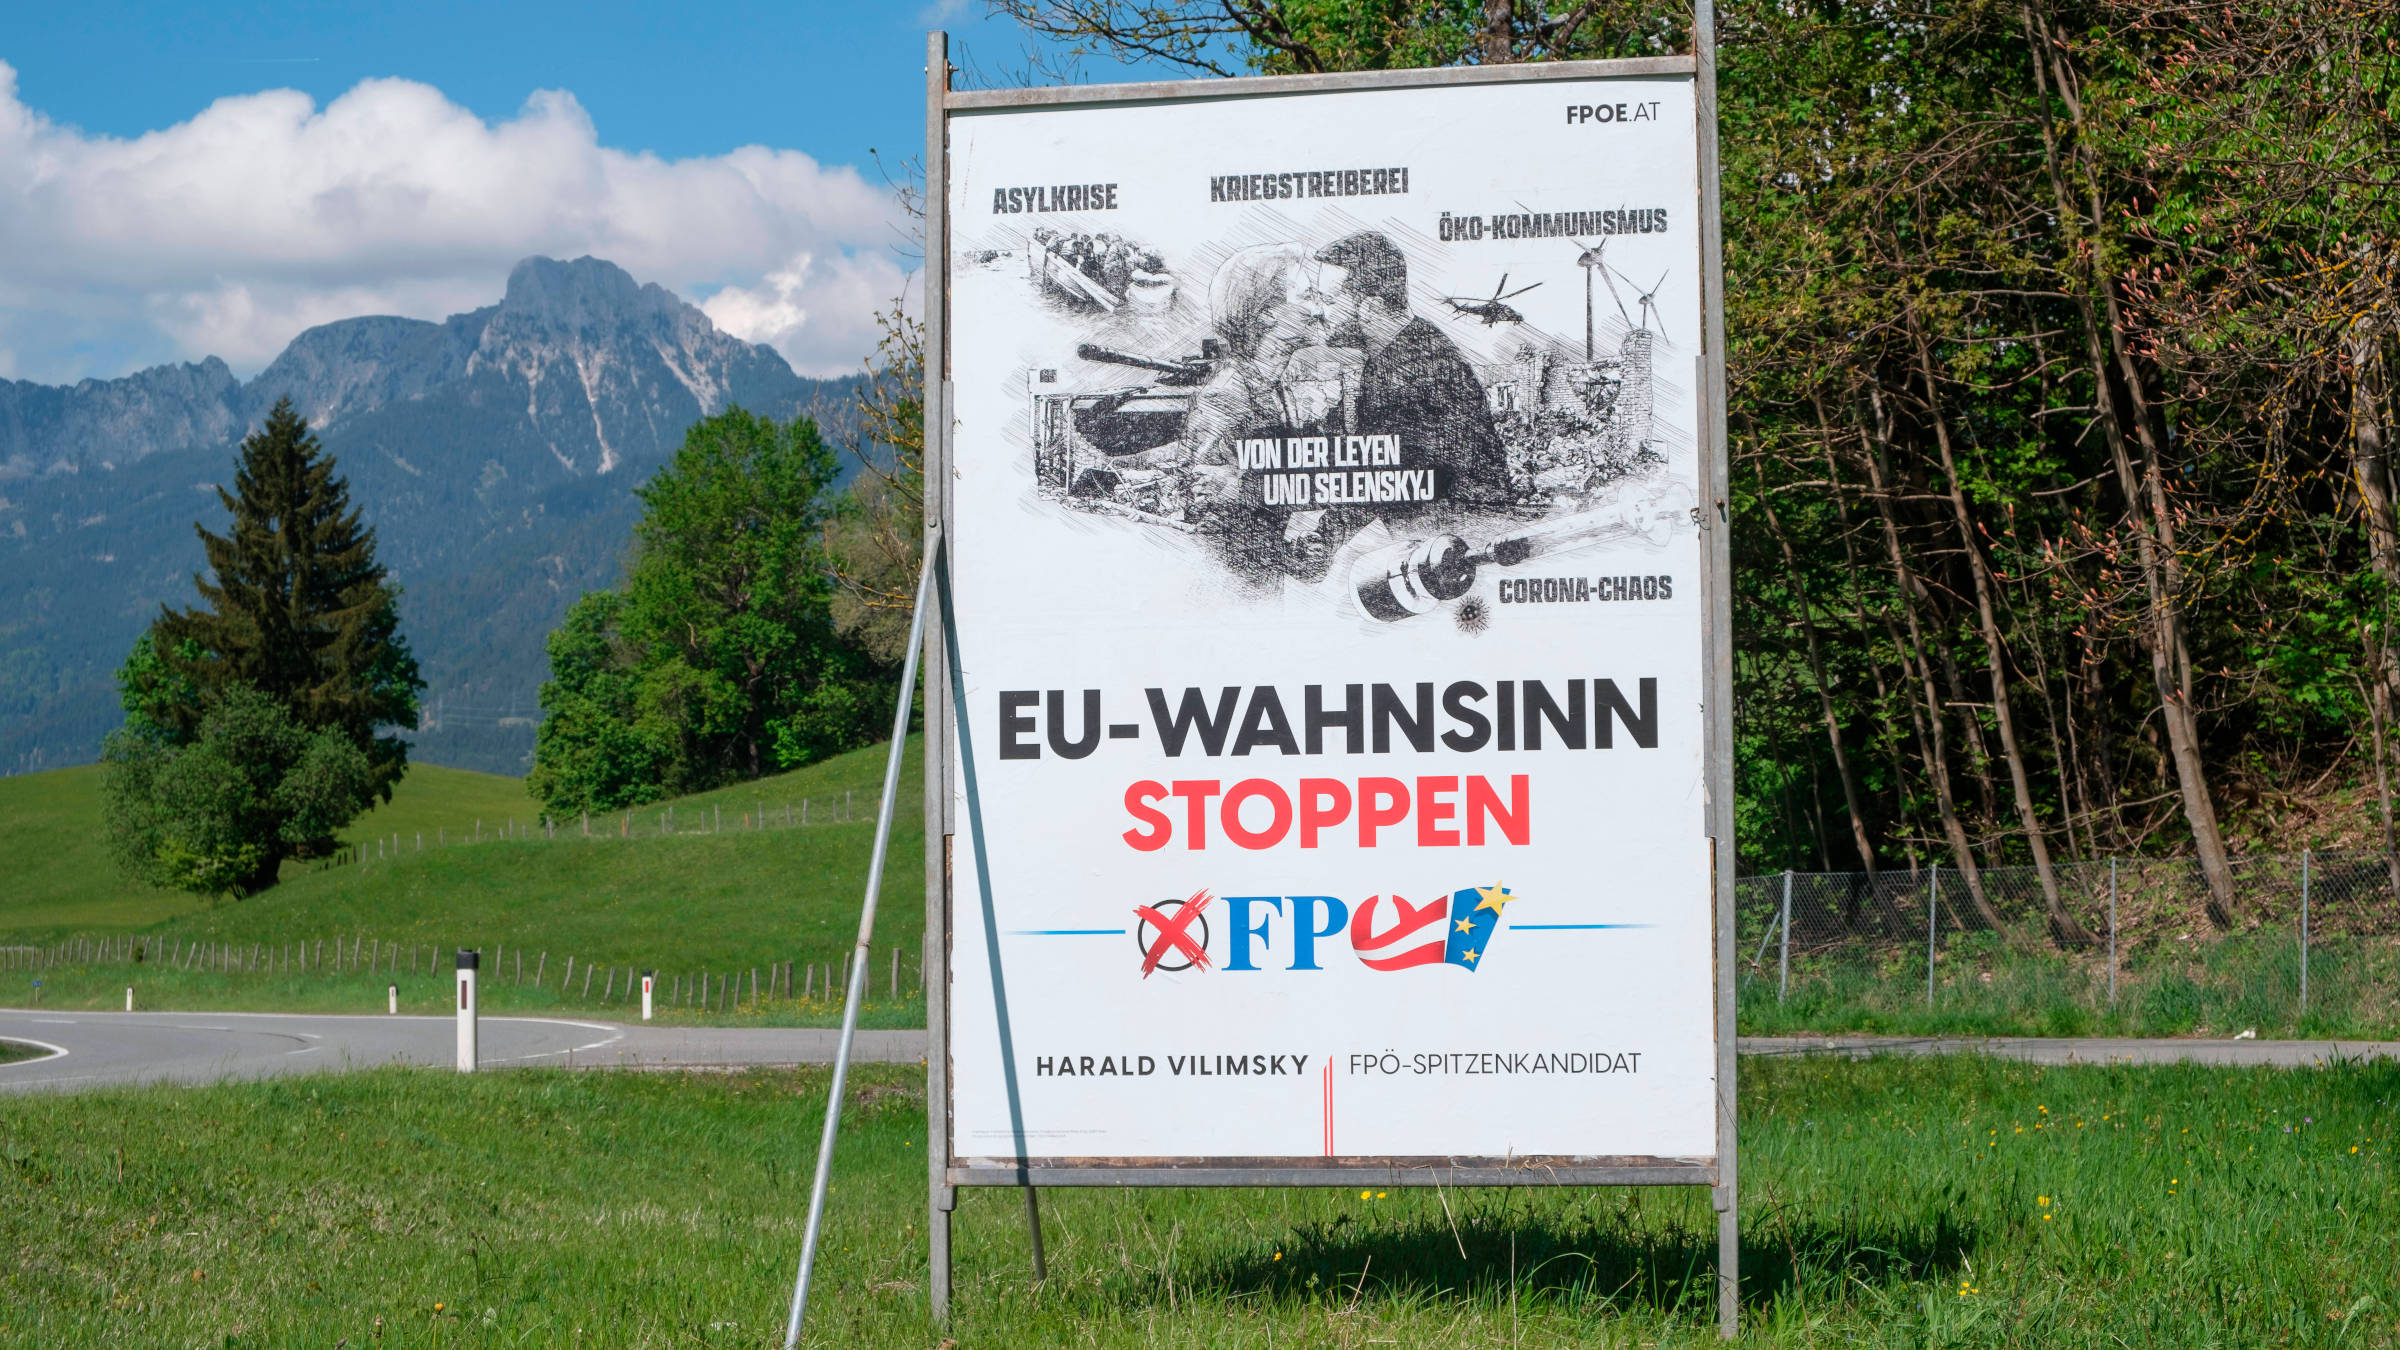 Ein Plakat der rechtsextremen Partei FPÖ aus Österreich zur Europawahl mit dem Slogan "EU-Wahnsinn stoppen".